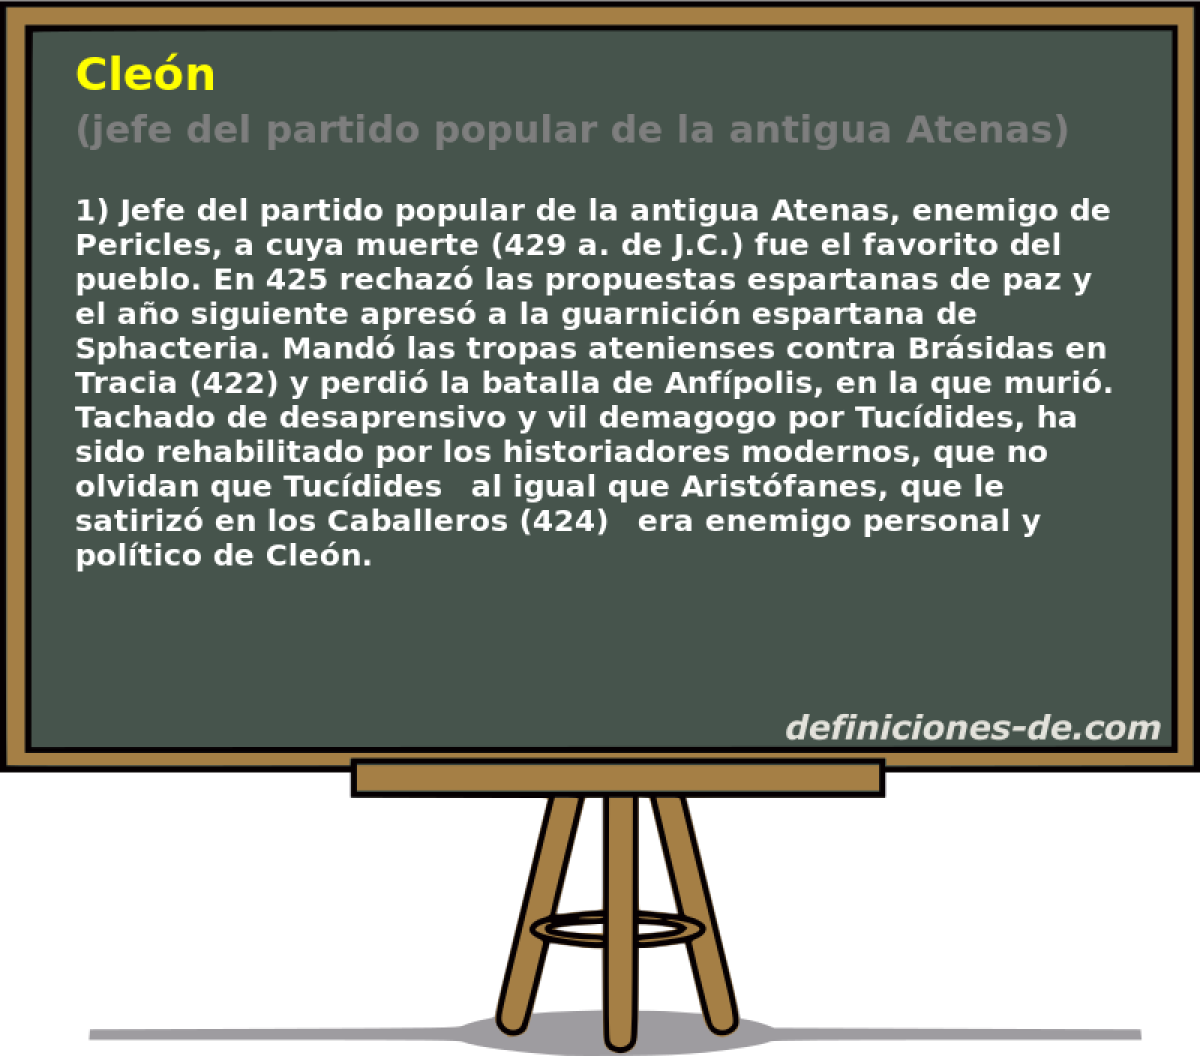 Clen (jefe del partido popular de la antigua Atenas)